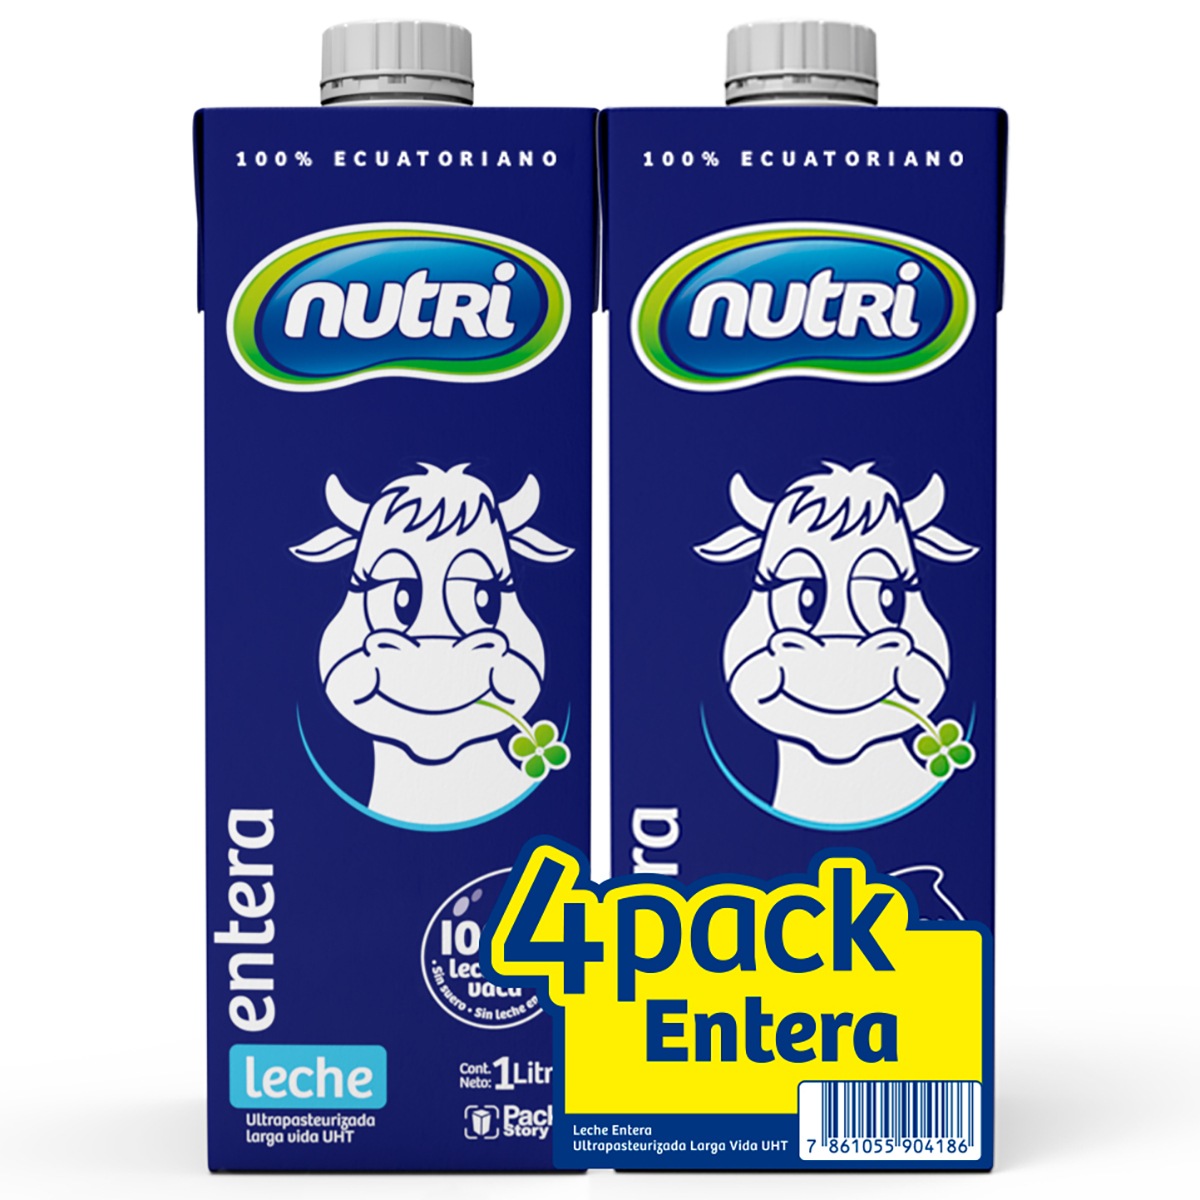 ✨ No lo olvides, junta 5 packs de leche Nutri en funda de